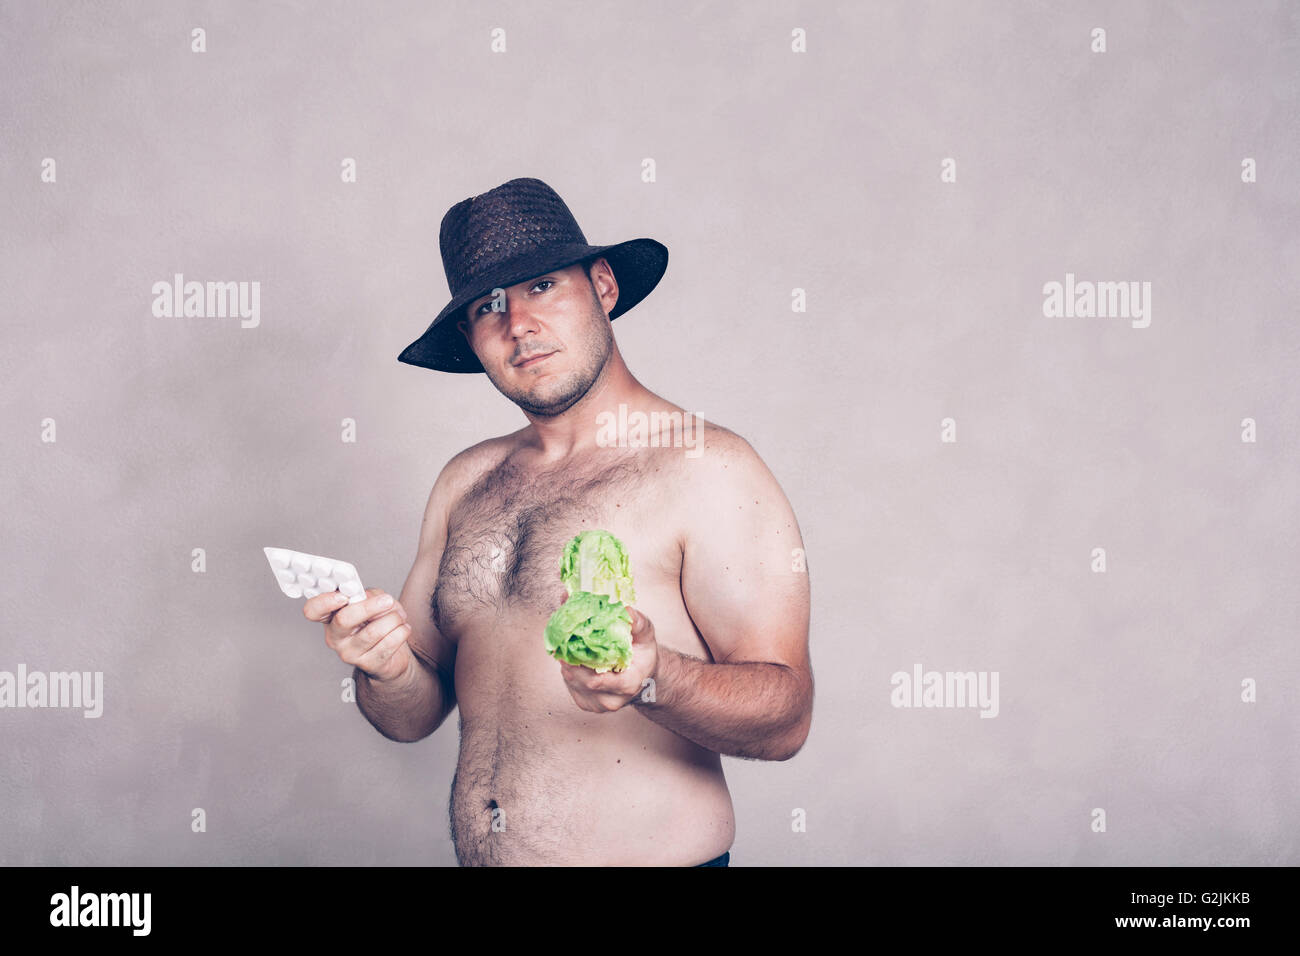 Nackte korpulente Mann mit Hut, die Abhaltung von pharmazeutischen Produkten und Salat. Stockfoto